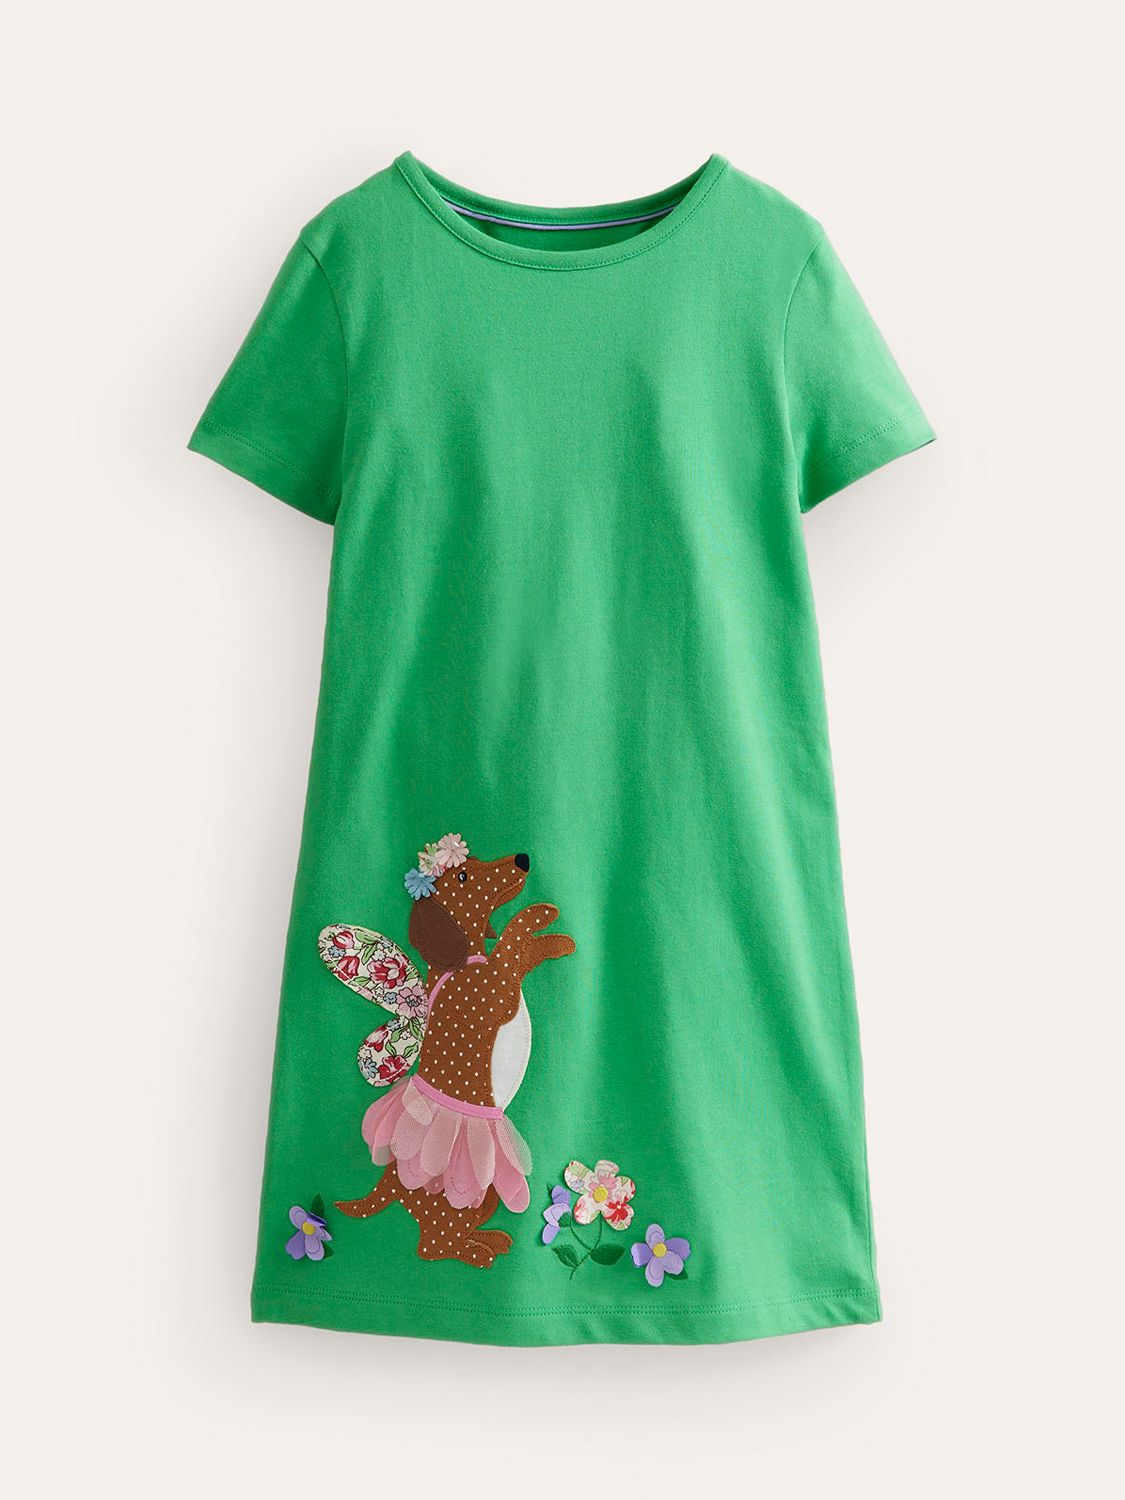 Mini Boden Kids' Vanilla Dog Applique Jersey Dress, Green, 12-18 months